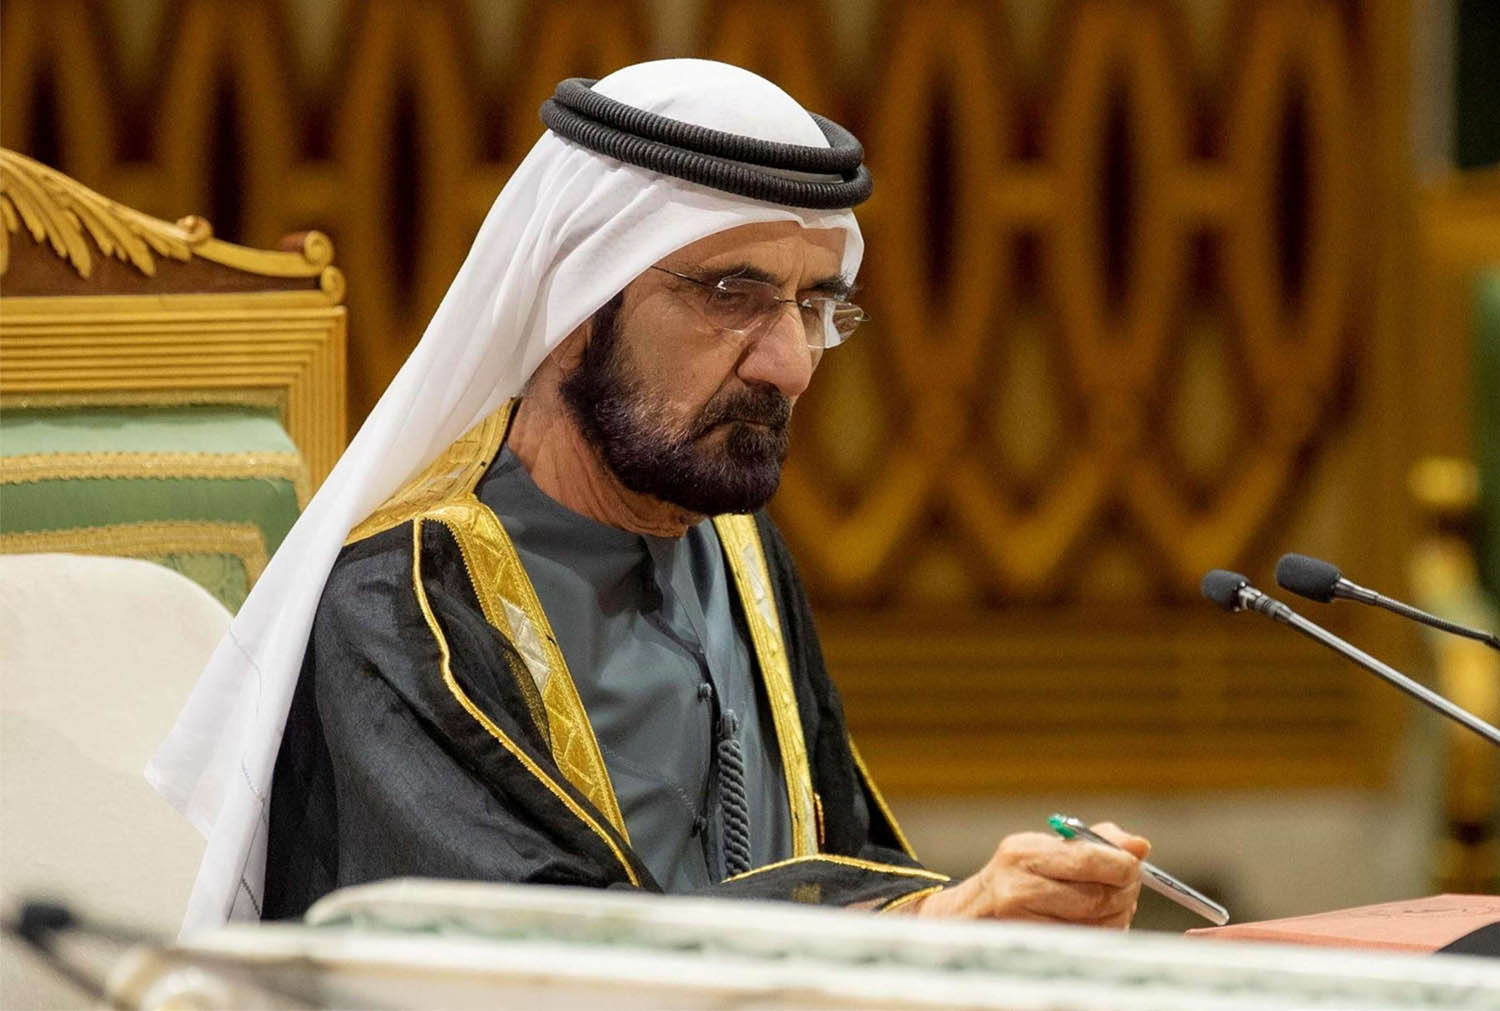 Dubai ruler Sheikh Mohammed bin Rashid Al Maktoum 